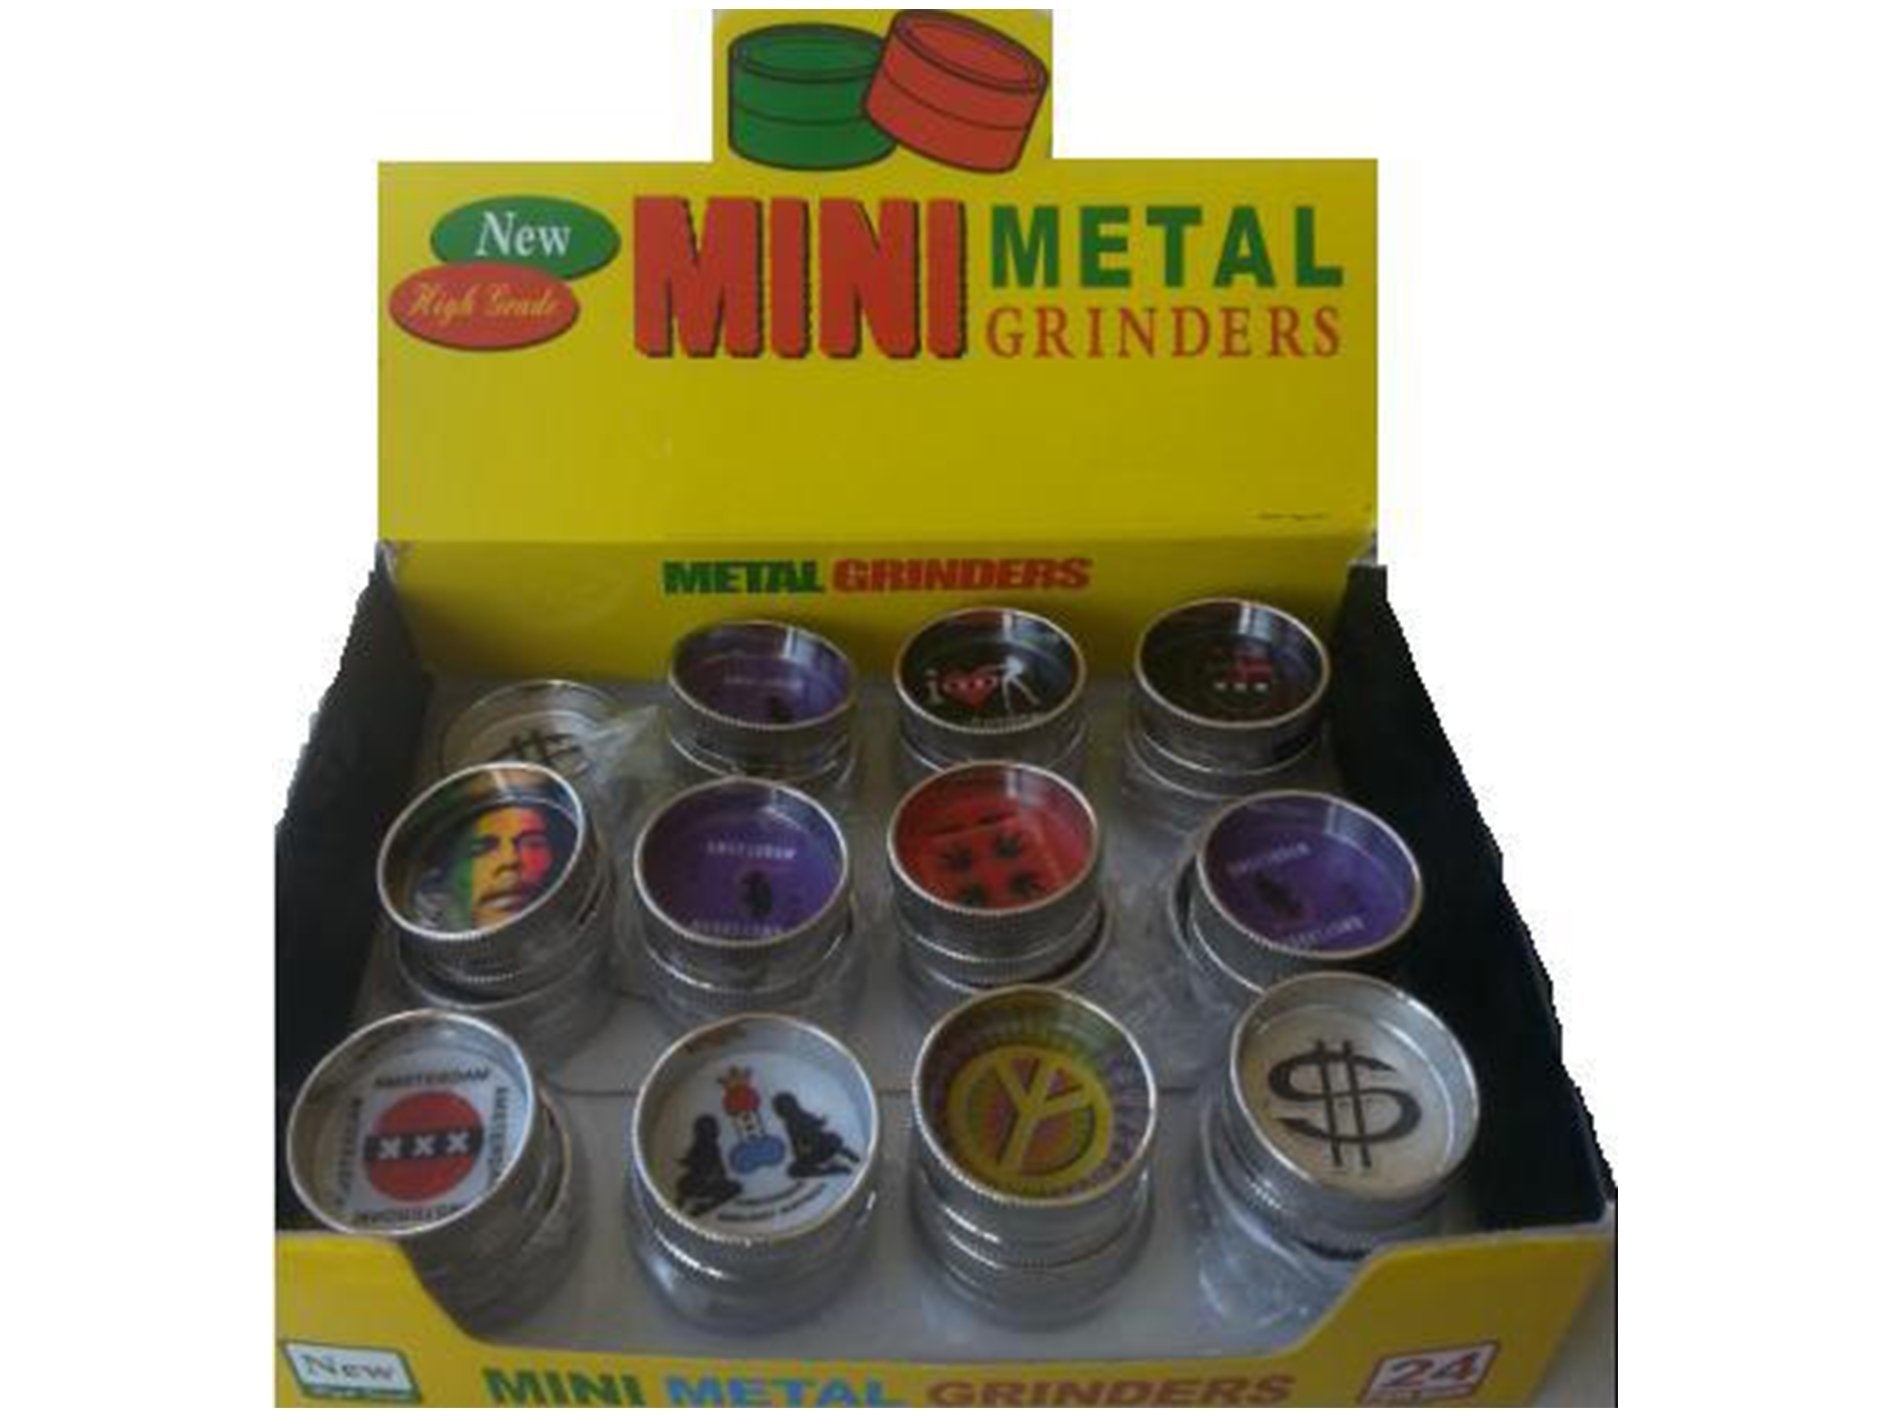 MINI Metal Grinders High Grade MMG001 - VIR Wholesale